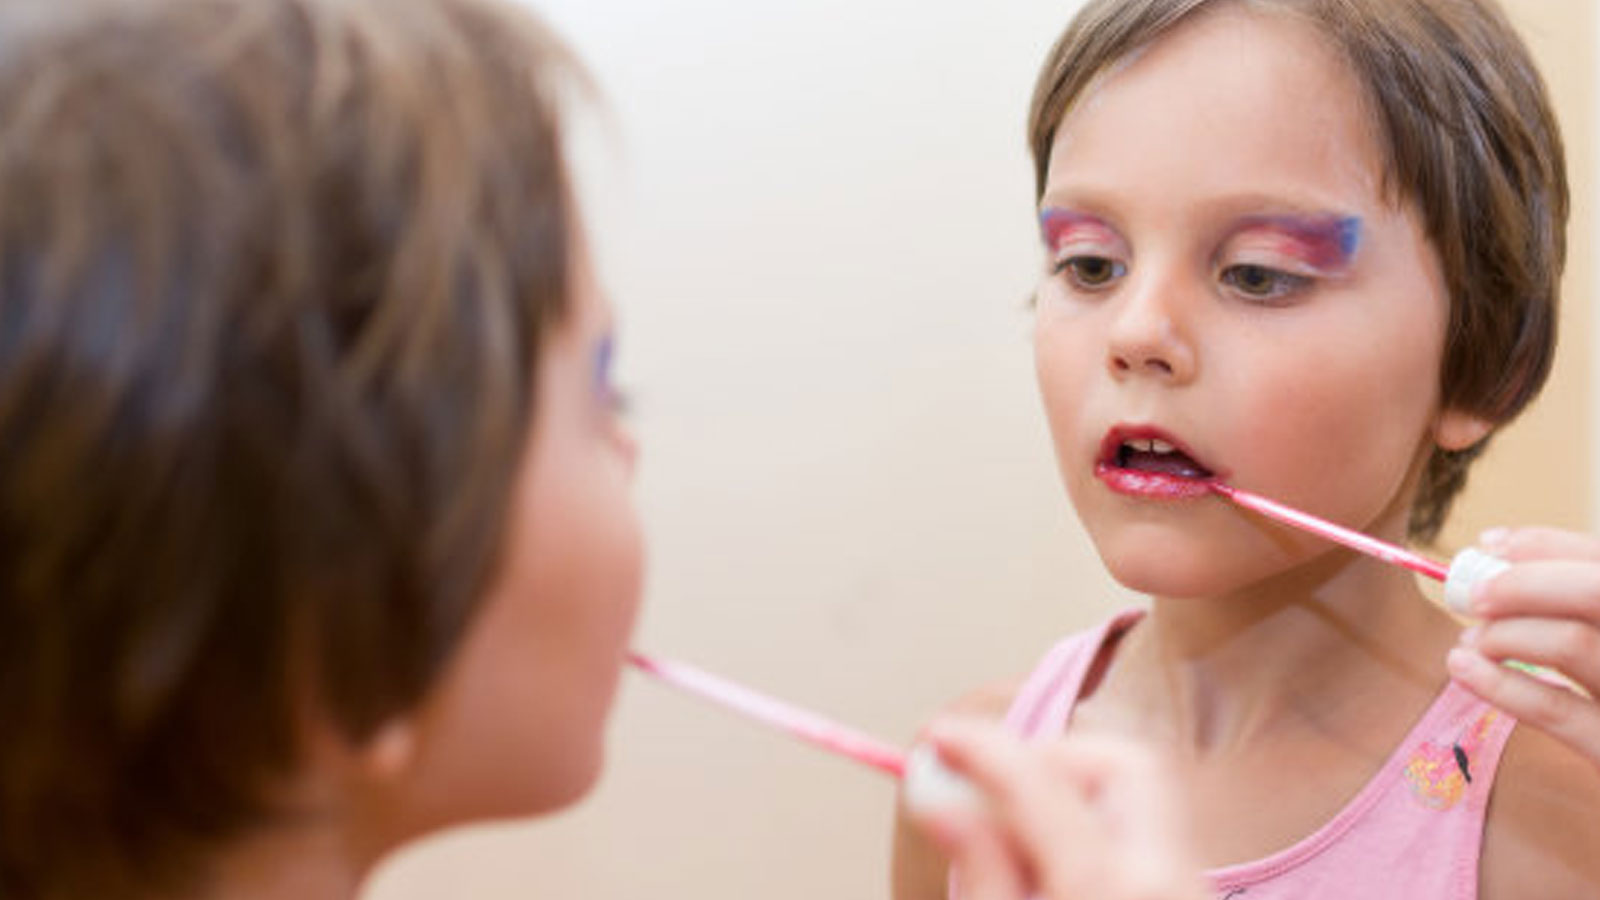 Πρώιμη Εφηβεία στα Κορίτσια: Χημικές Ουσίες σε Σαπούνια, Σαμπουάν και Καλλυντικά Συνδέονται Σύμφωνα με Μελέτη